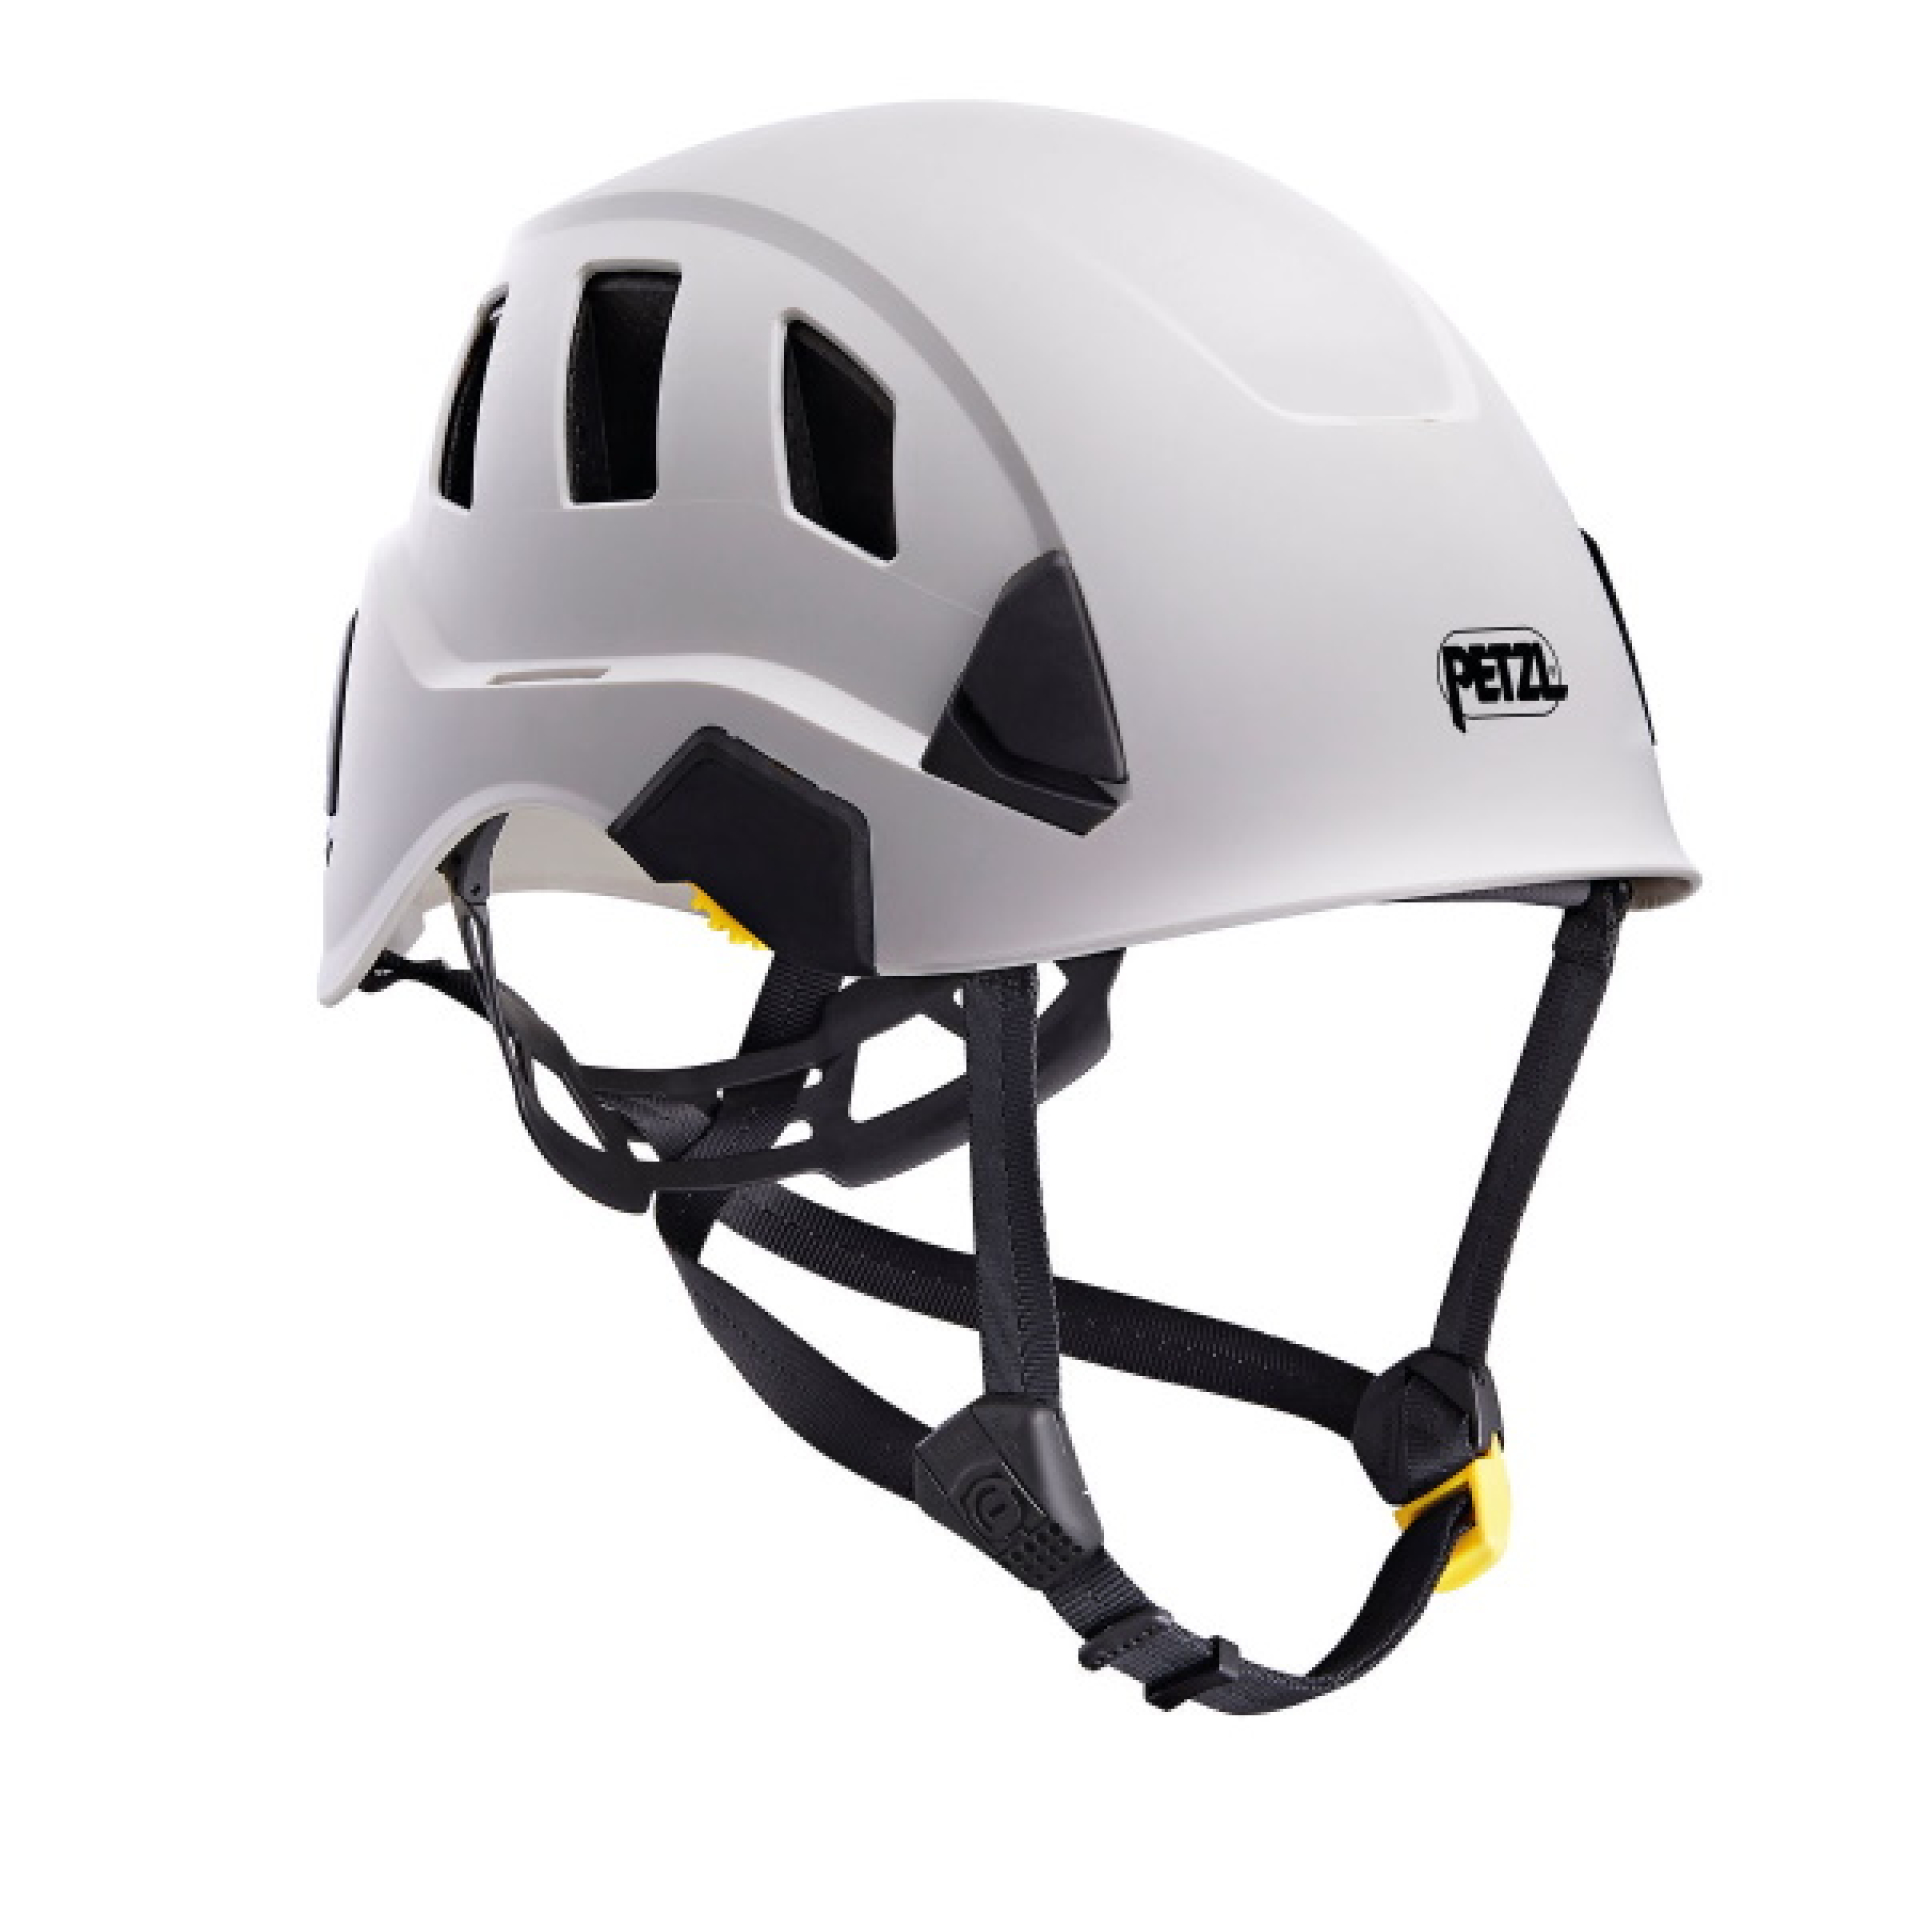 Petzl Safety Helmets